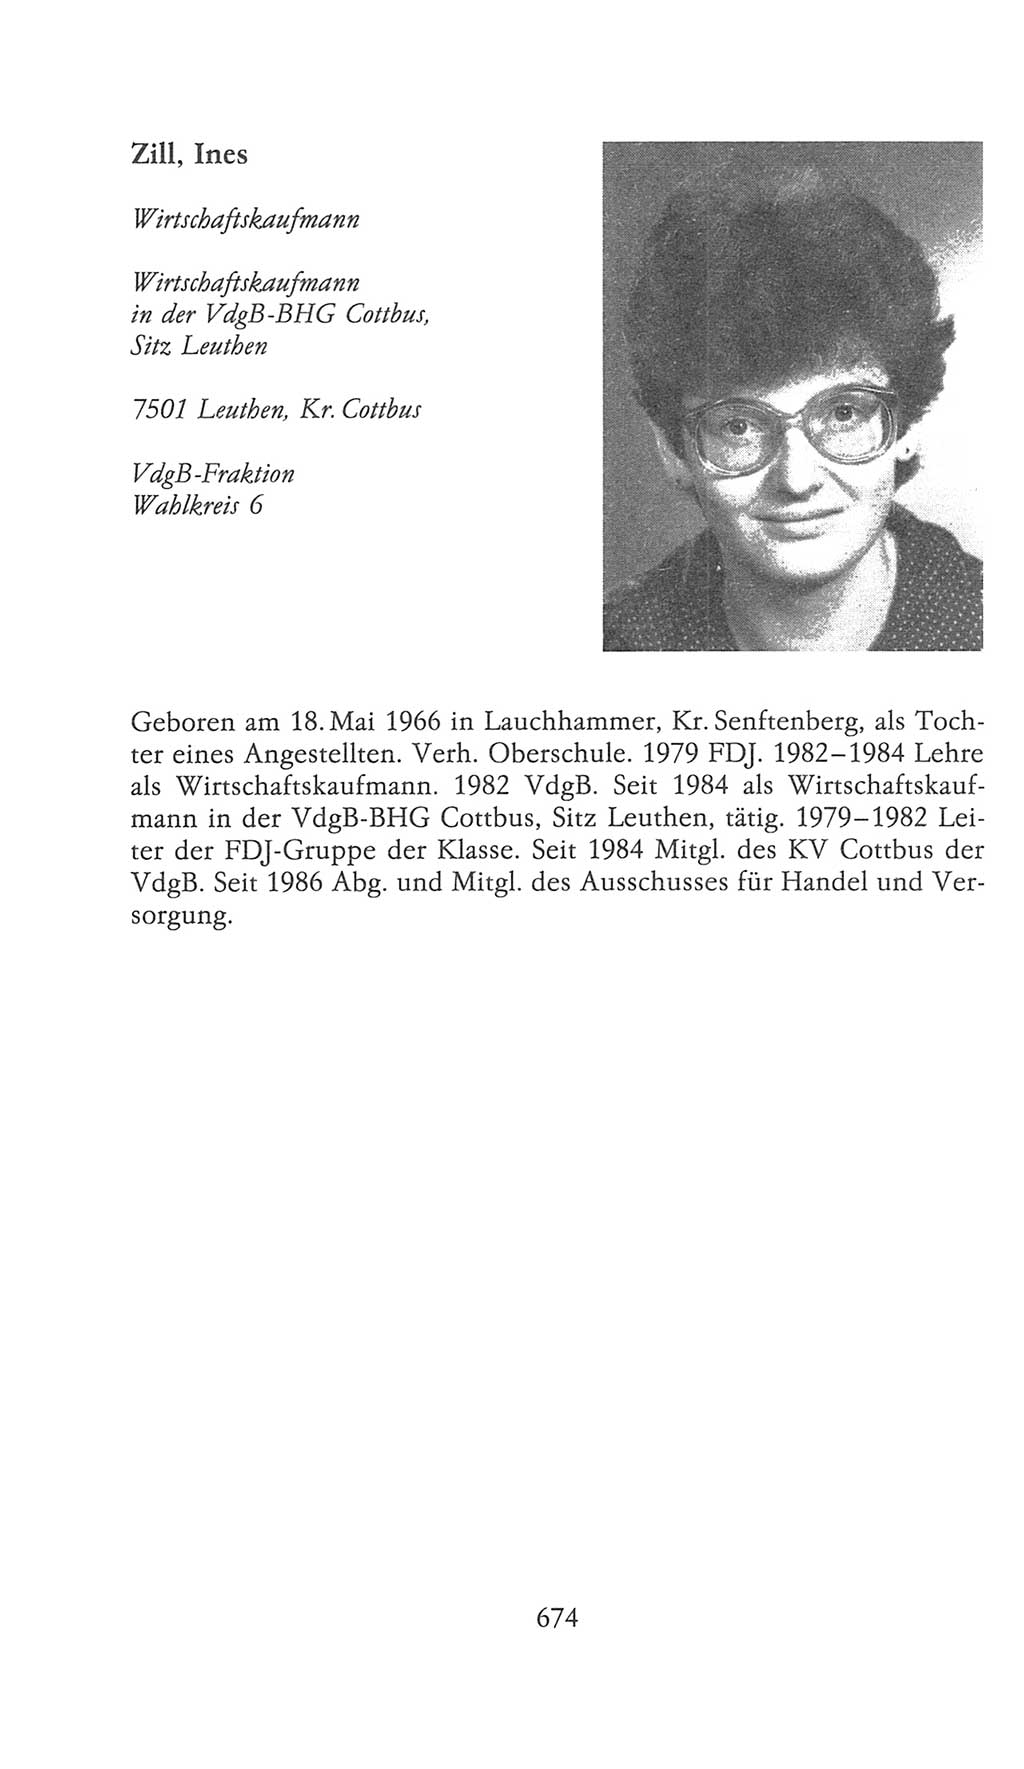 Volkskammer (VK) der Deutschen Demokratischen Republik (DDR), 9. Wahlperiode 1986-1990, Seite 674 (VK. DDR 9. WP. 1986-1990, S. 674)